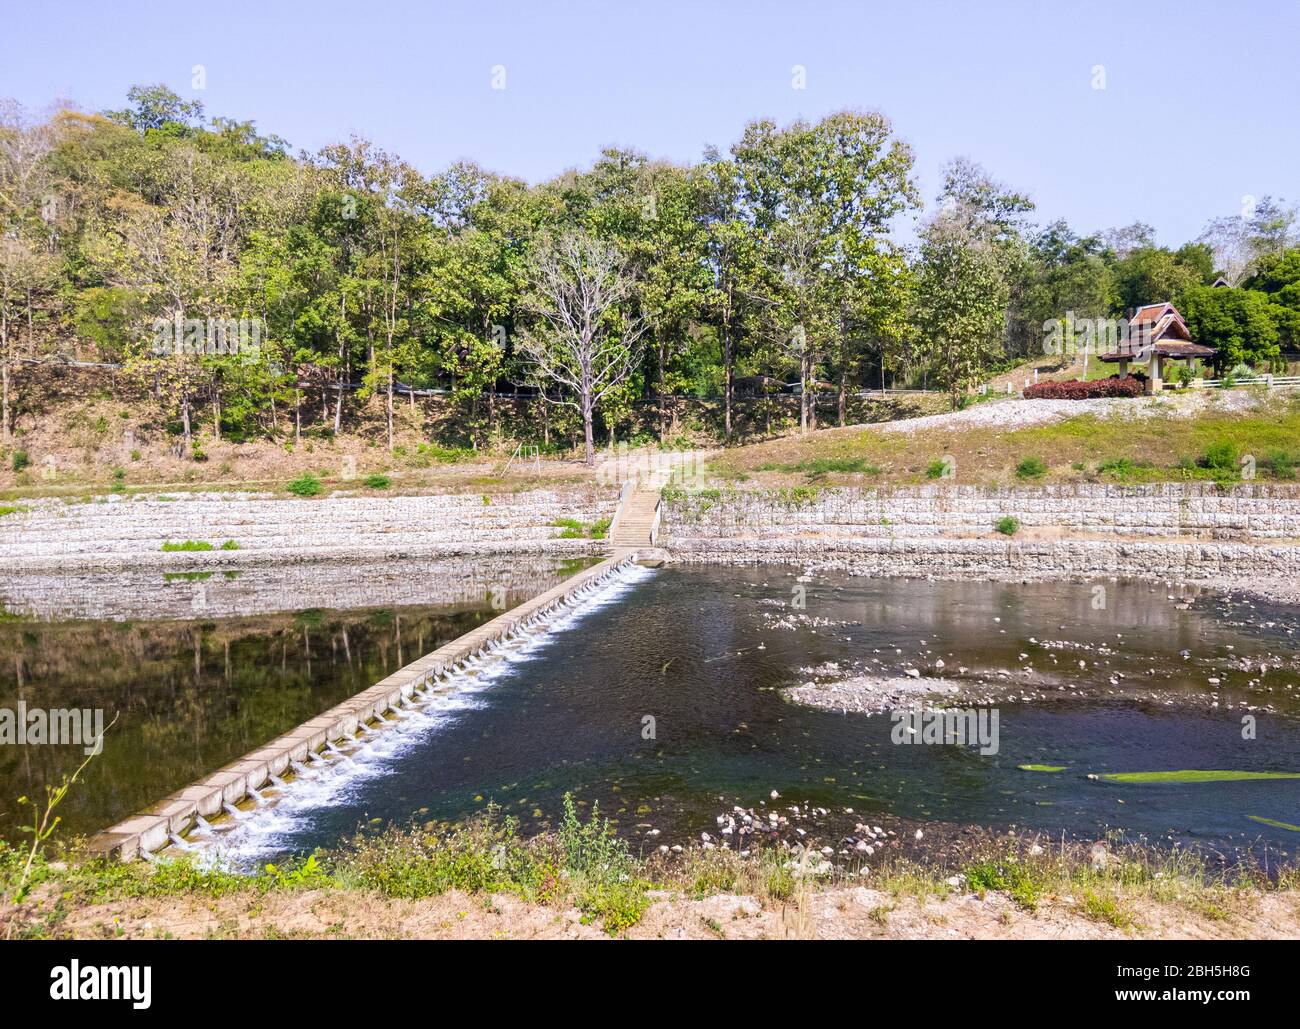 Kleiner Bewässerungsdamm für die Verlangsamung des Wassers nach dem Fließen aus dem großen Damm, verteilt auf das Kulturgebiet im Land Thailand. Stockfoto